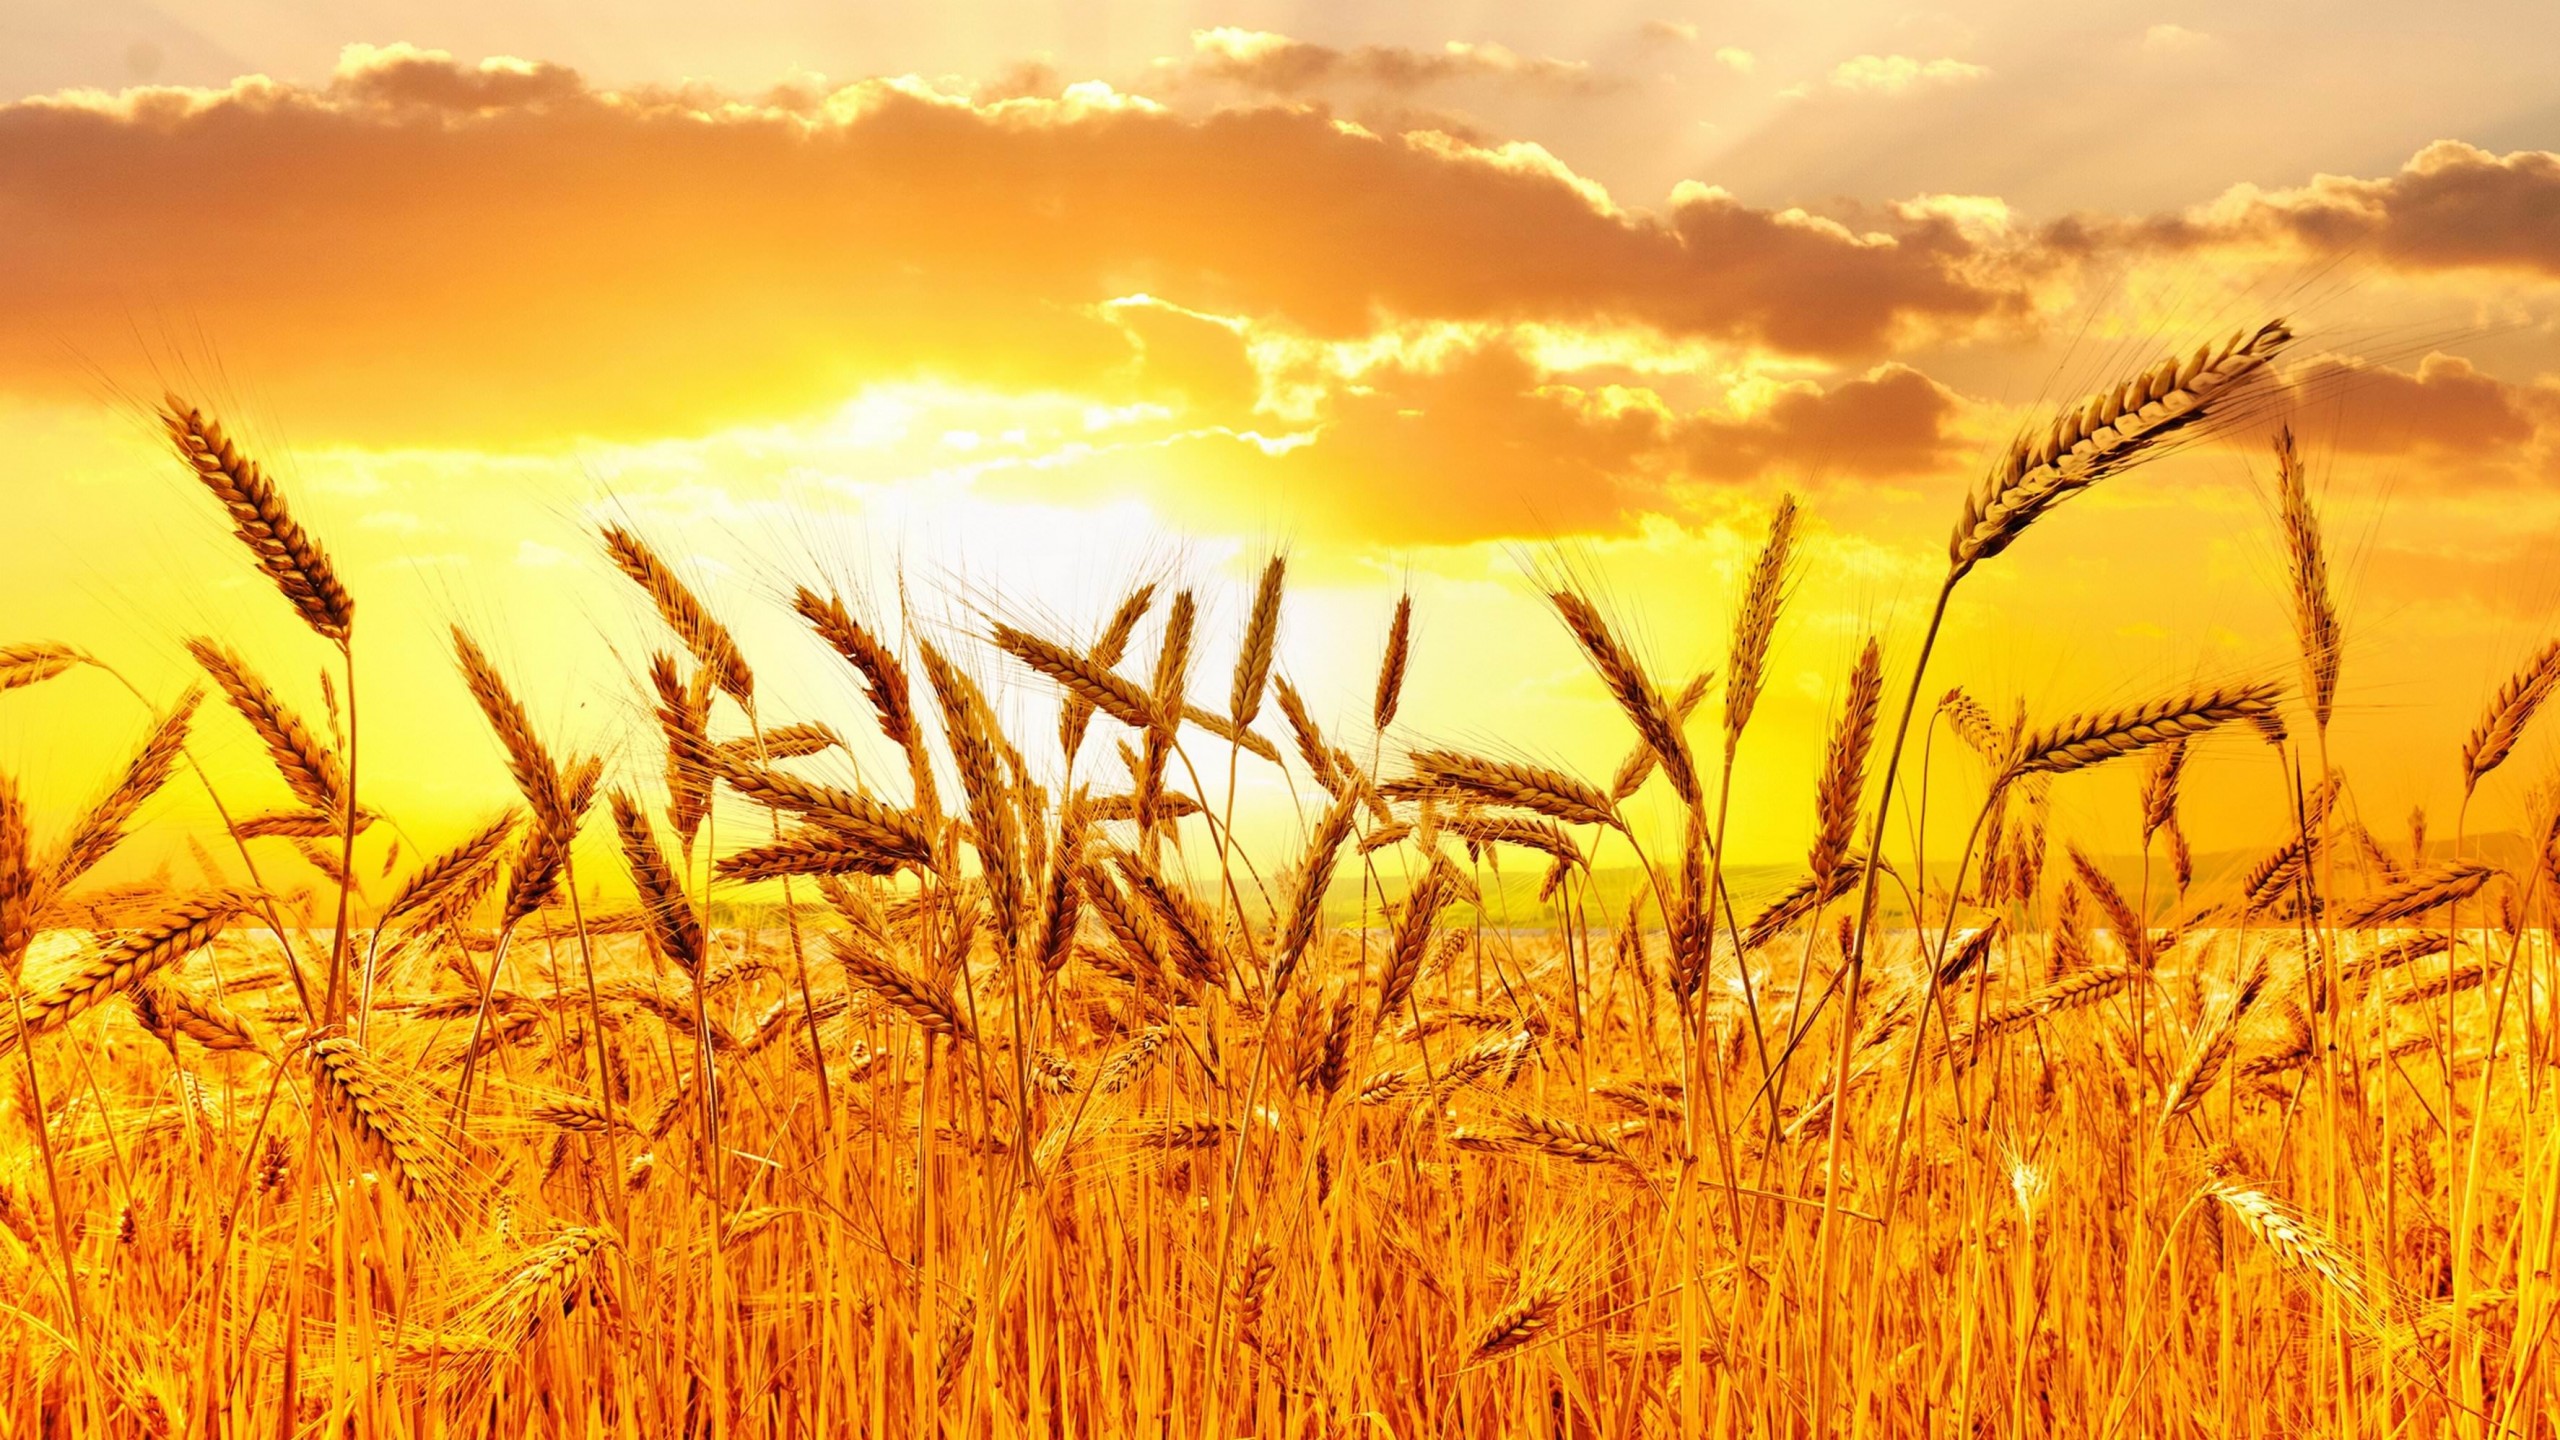 Golden Wheat Field At Sunset Wallpaper for Desktop 2560x1440